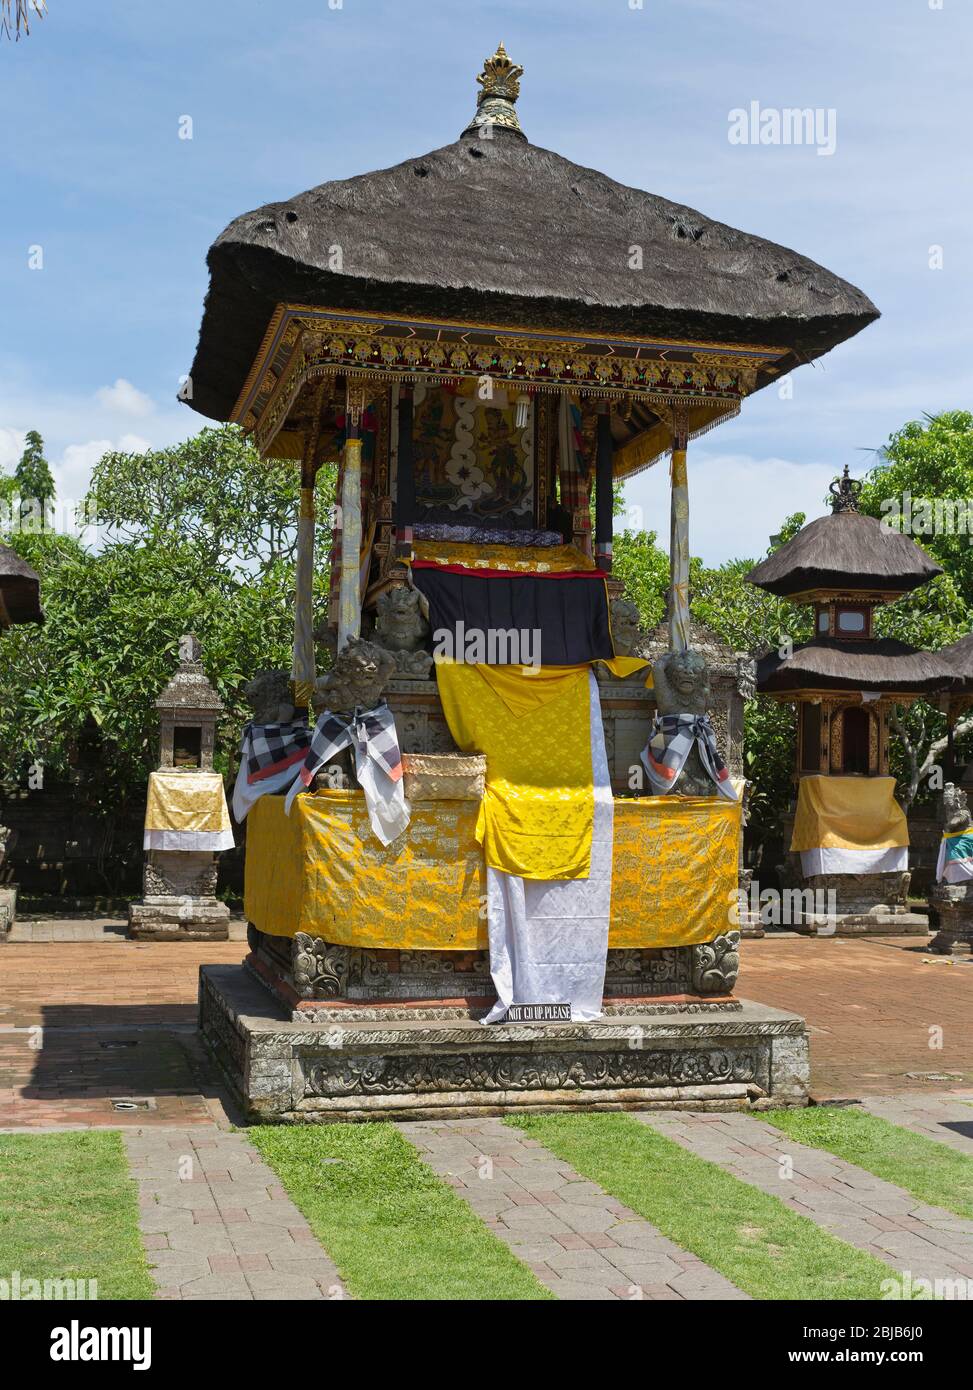 tempio dh Balinese Batuan BALI INDONESIA tradizionale Hindu edificio tempiale tetto di paglia decorato per festival Foto Stock